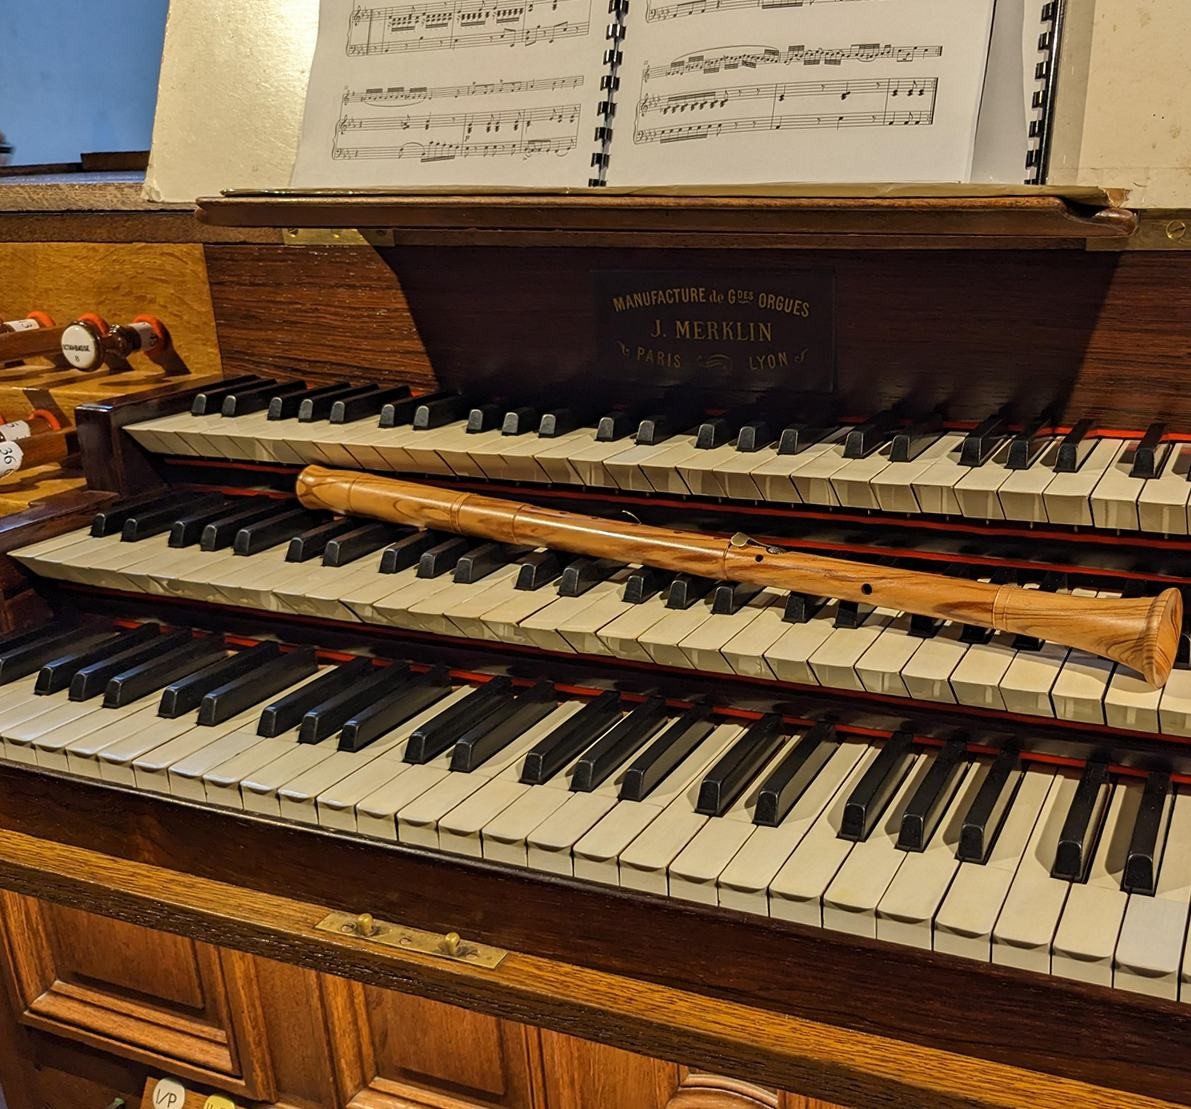 Claviers du grand orgue et flûte